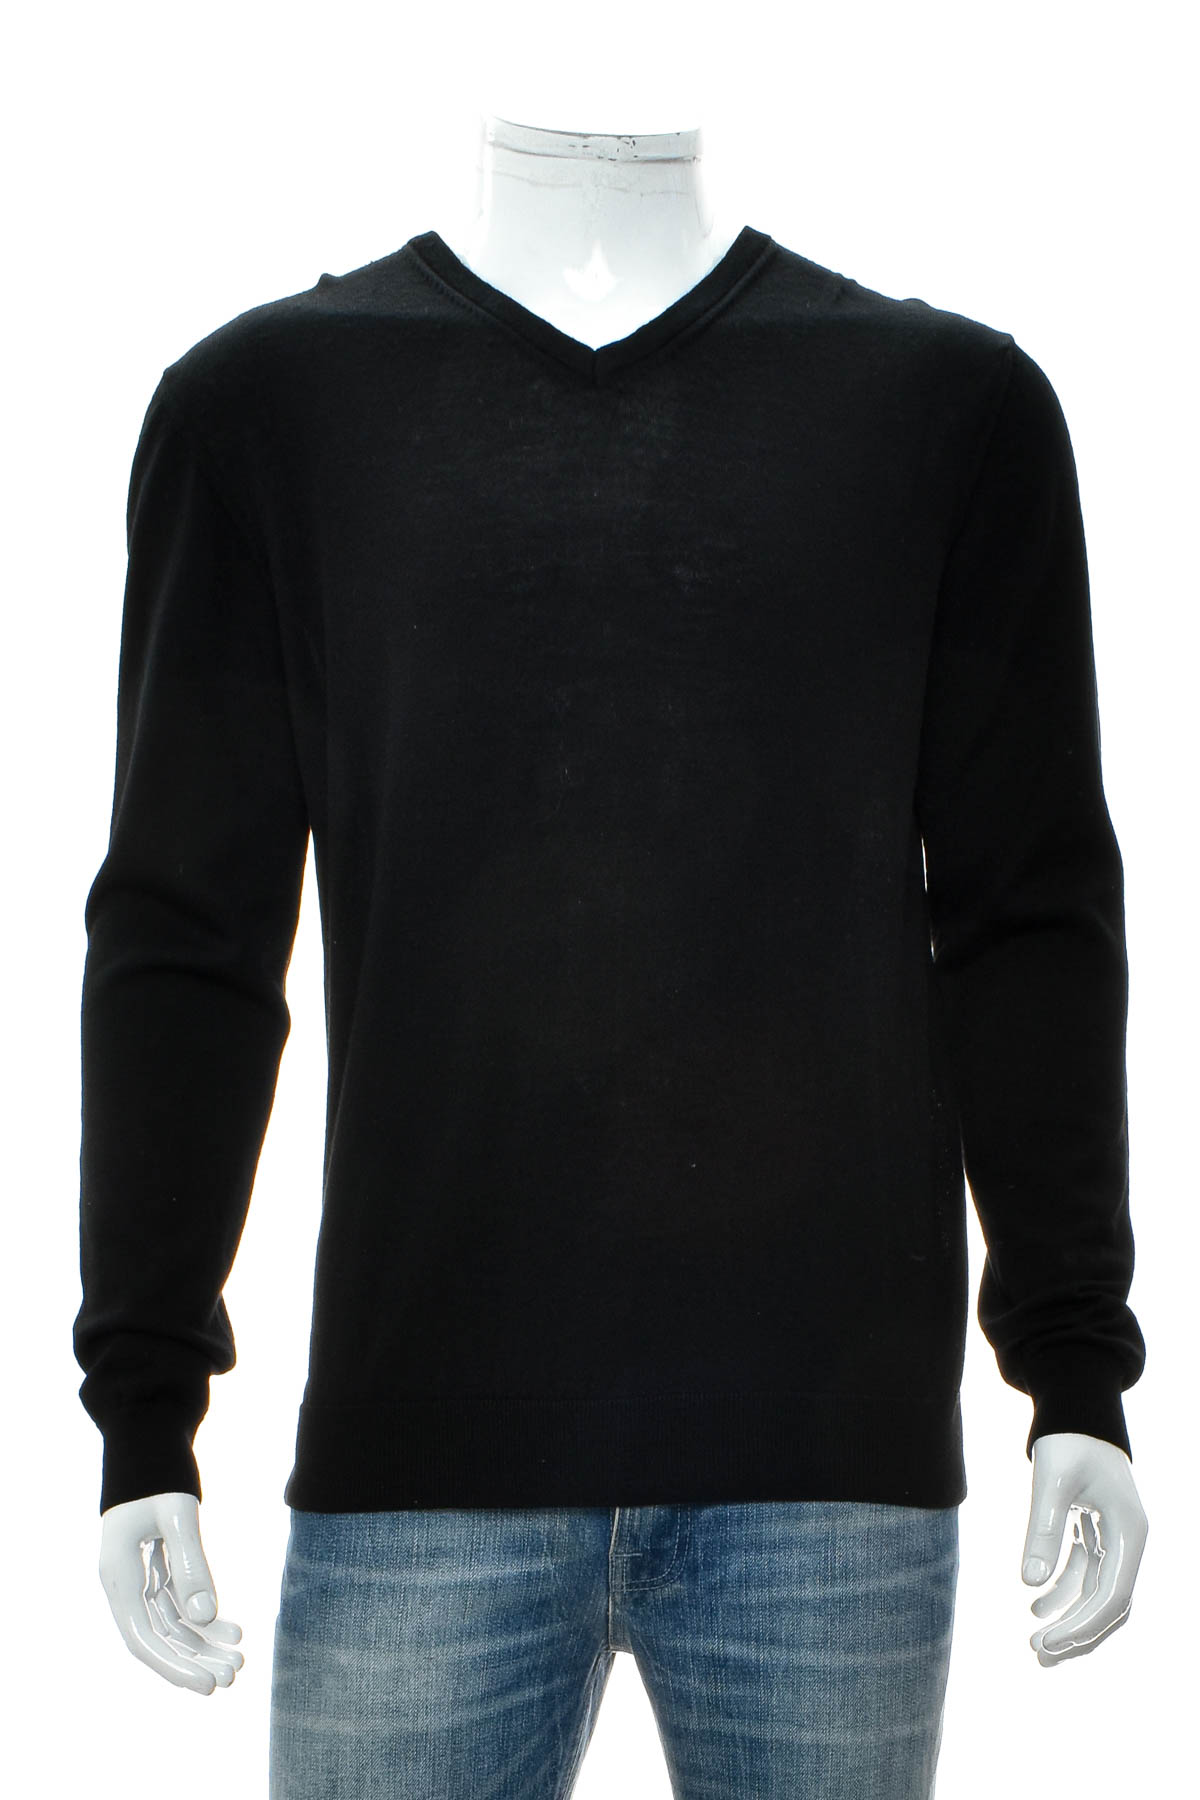 Men's sweater - ZARA - 0